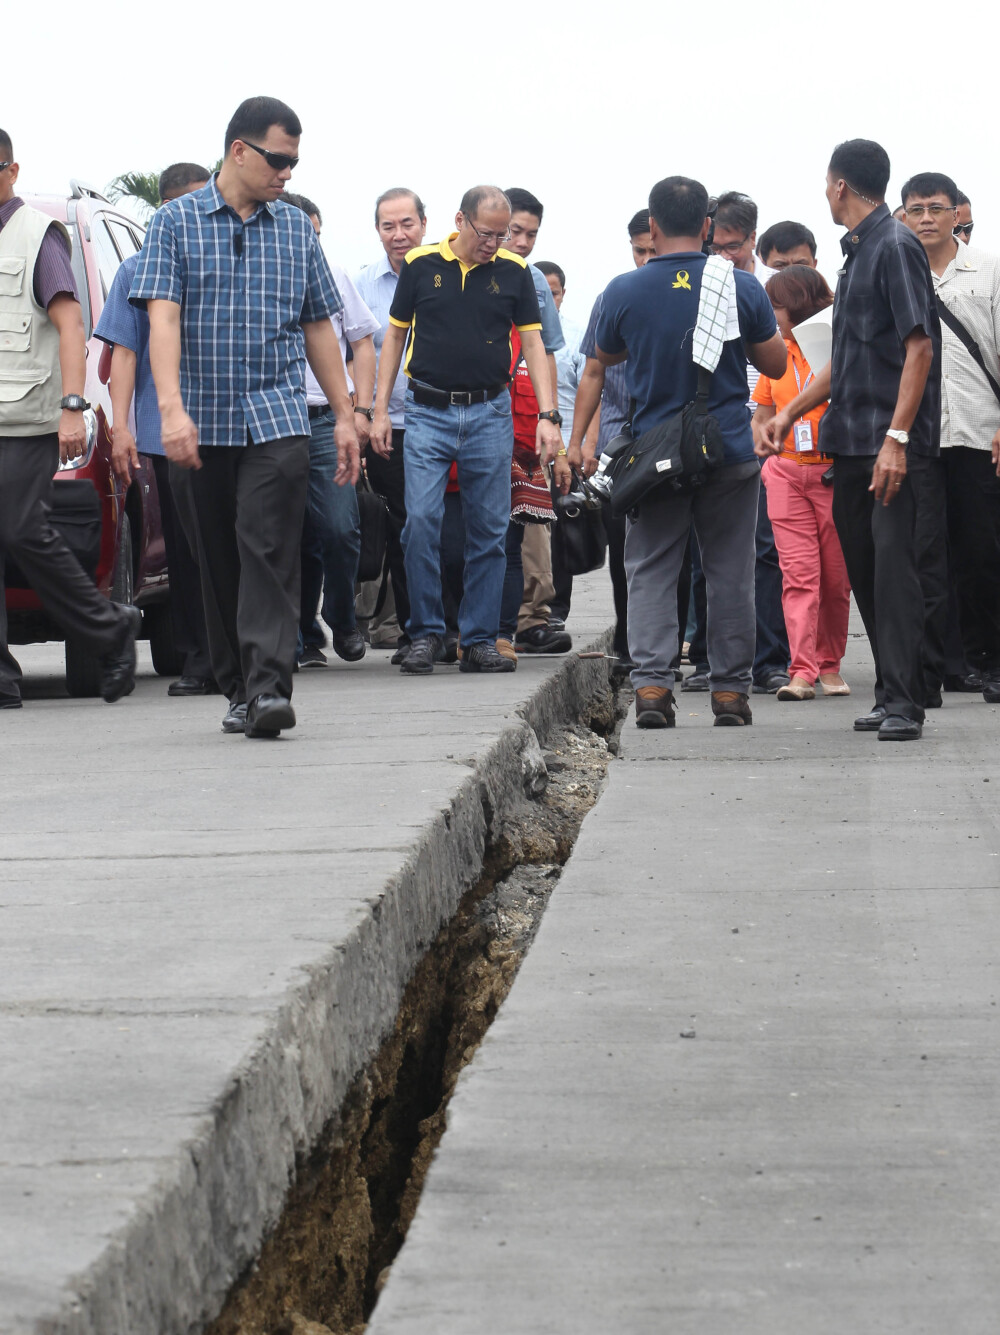 Bilantul cutremurului de 7,1 din Filipine. Sunt cel putin 172 de morti si 22 de persoane disparute - Imaginea 2